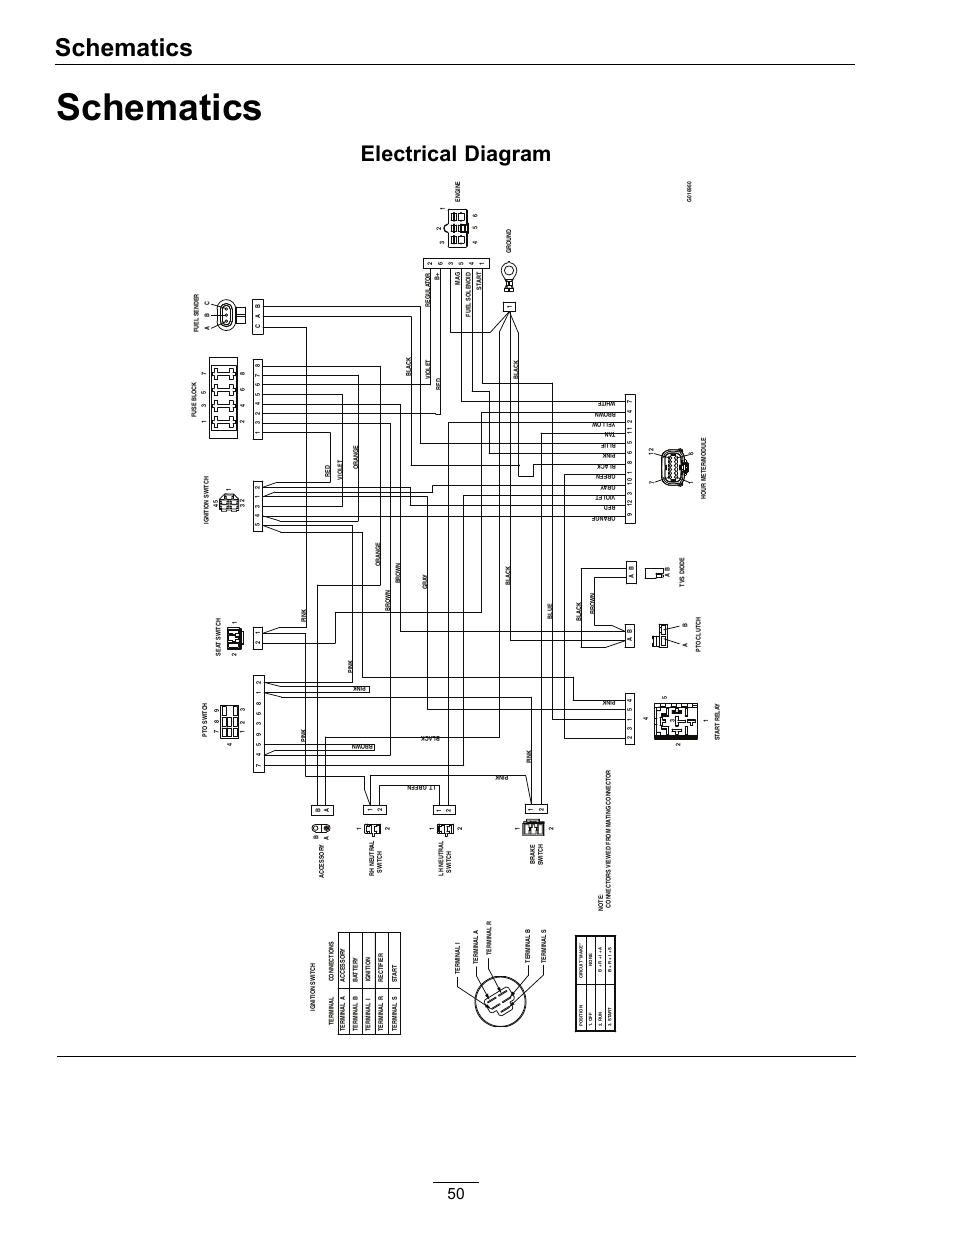 ipx10-10x wiring diagram